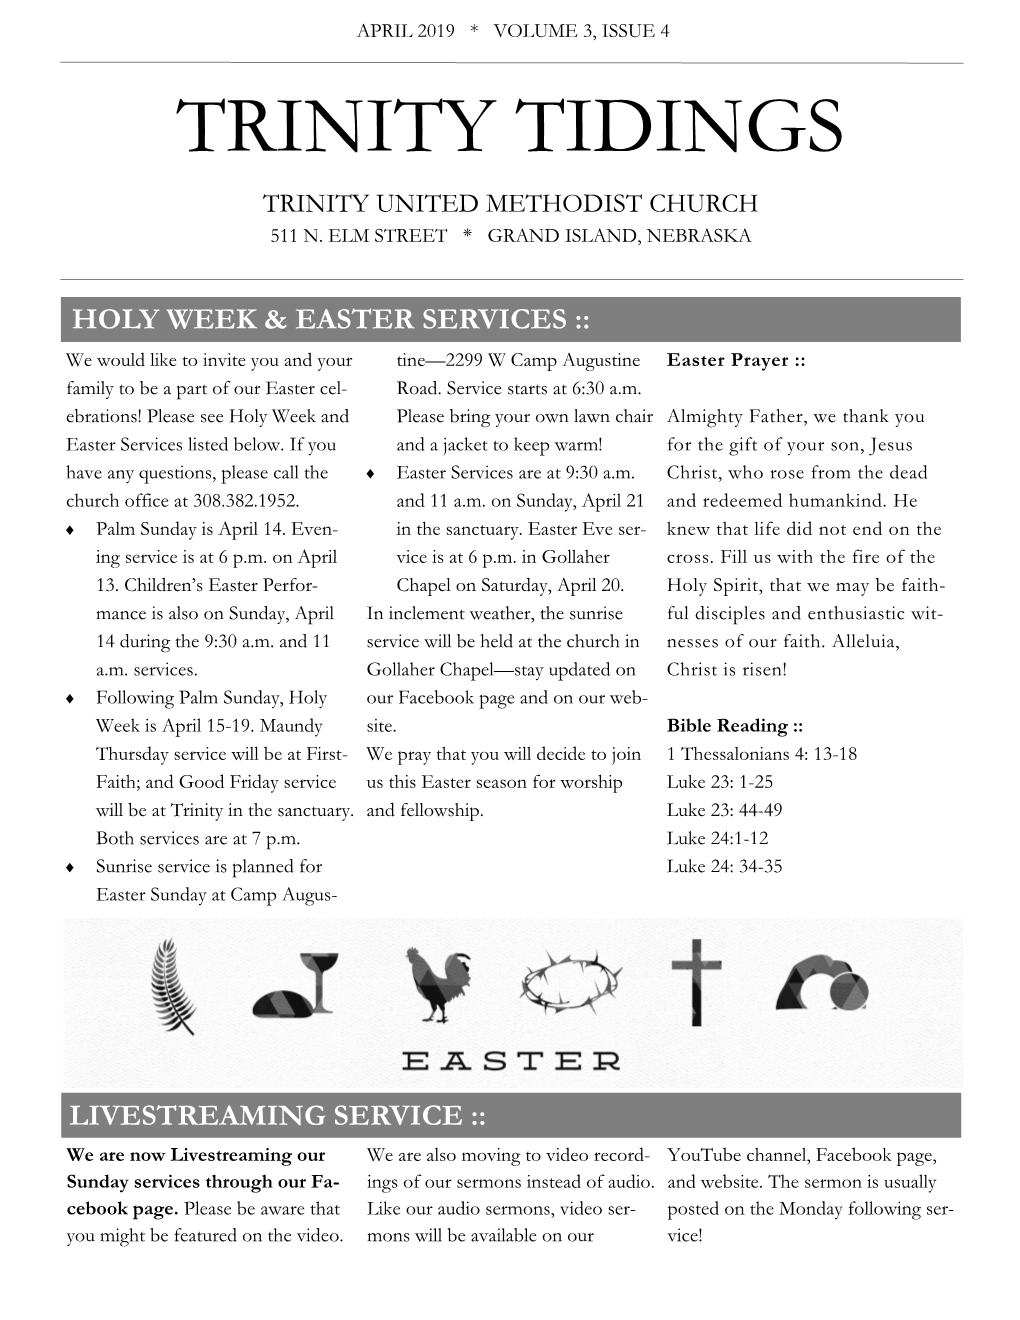 Trinity Tidings Trinity United Methodist Church 511 N